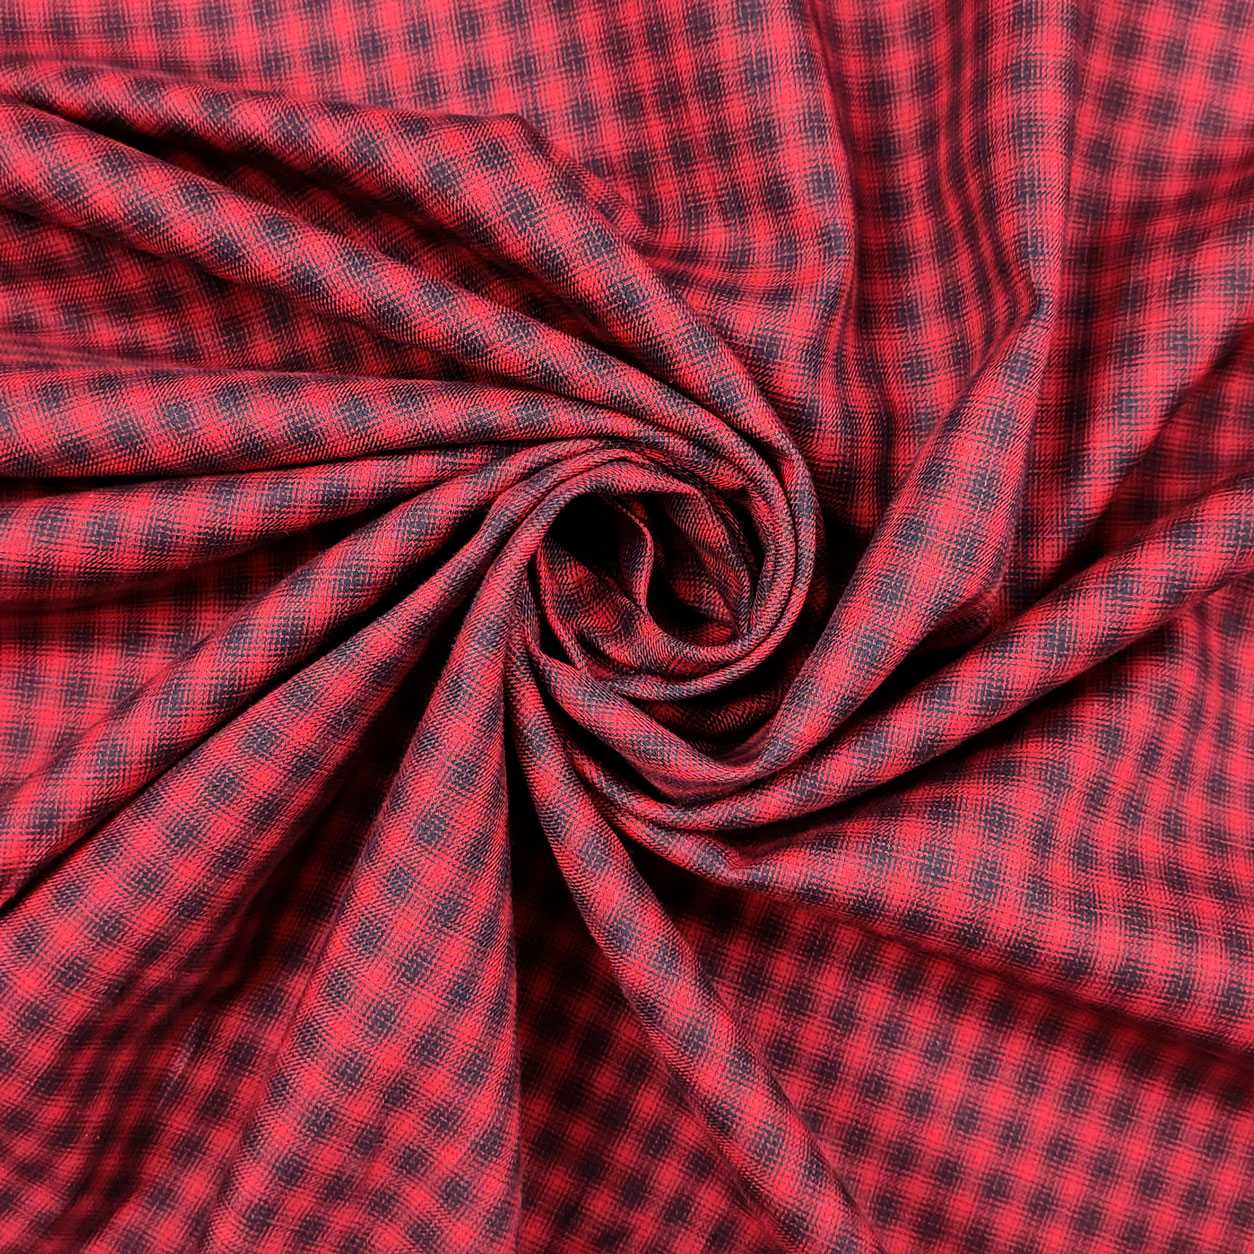 tessuto-in-cotone-per-camicia-rosso-quadri-blu